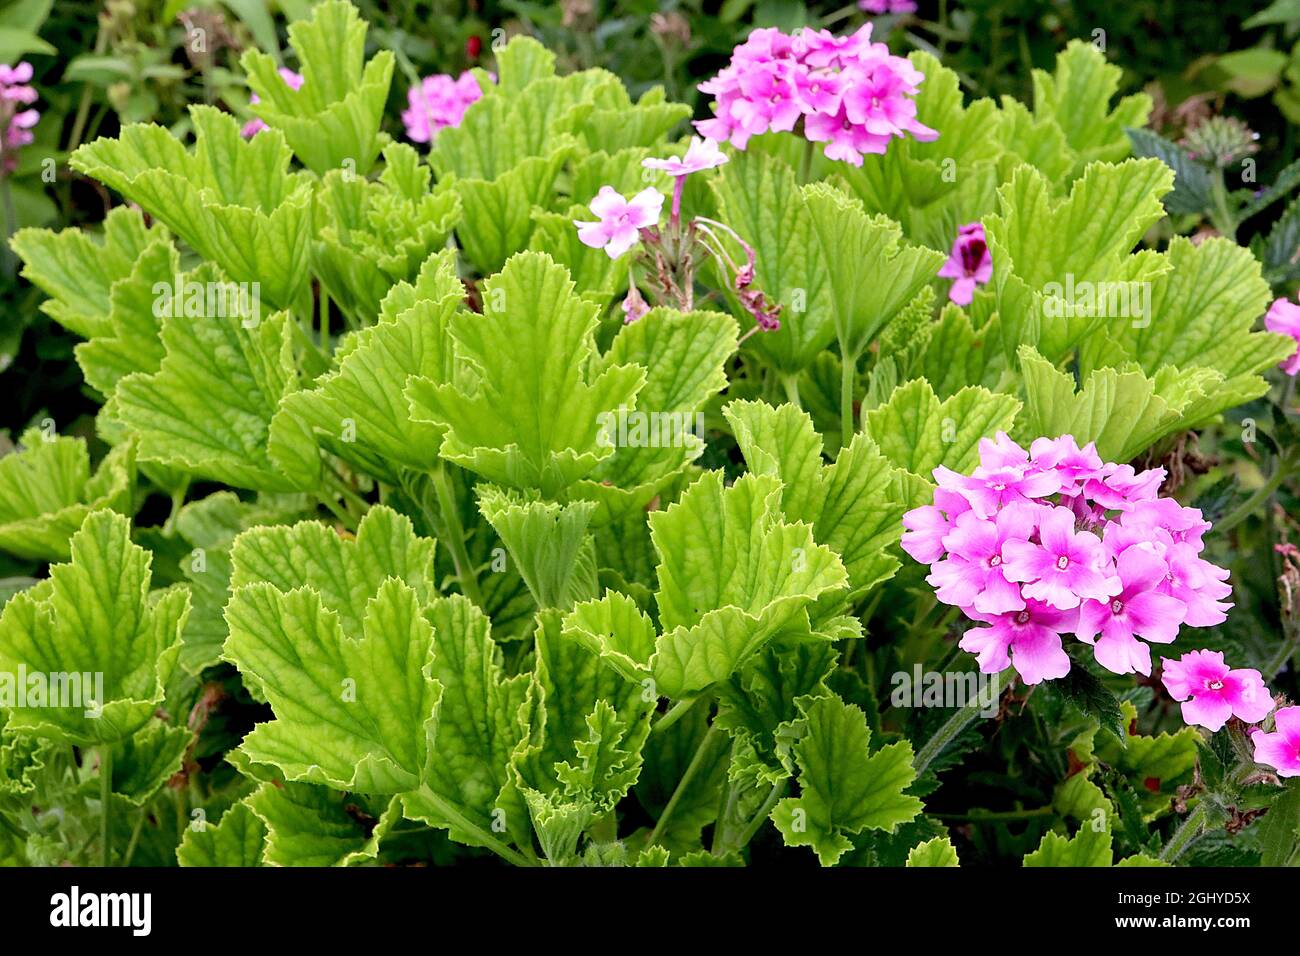 Pelargonium capitatum Geranie mit Rosenduft – frisch grüne, tief geäderte Blätter mit Rosenduft, Phlox paniculata ‘helle Augen’ blassrosa Blüten Stockfoto